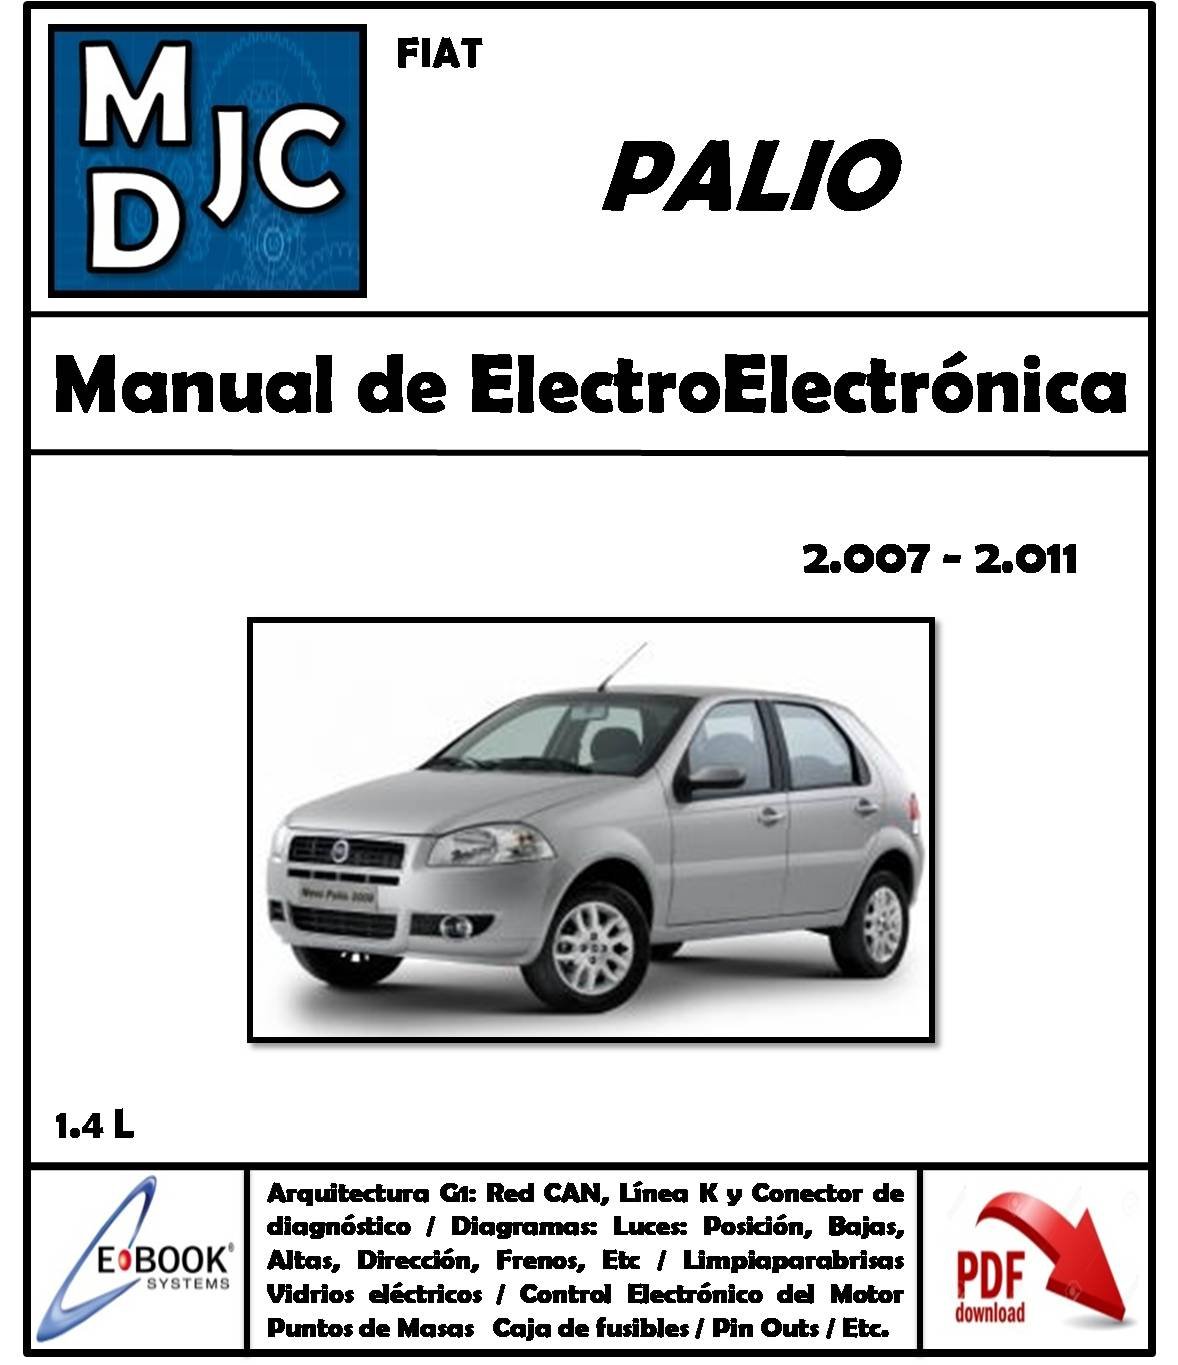 Fiat Palio 1.4 L 2007-2011